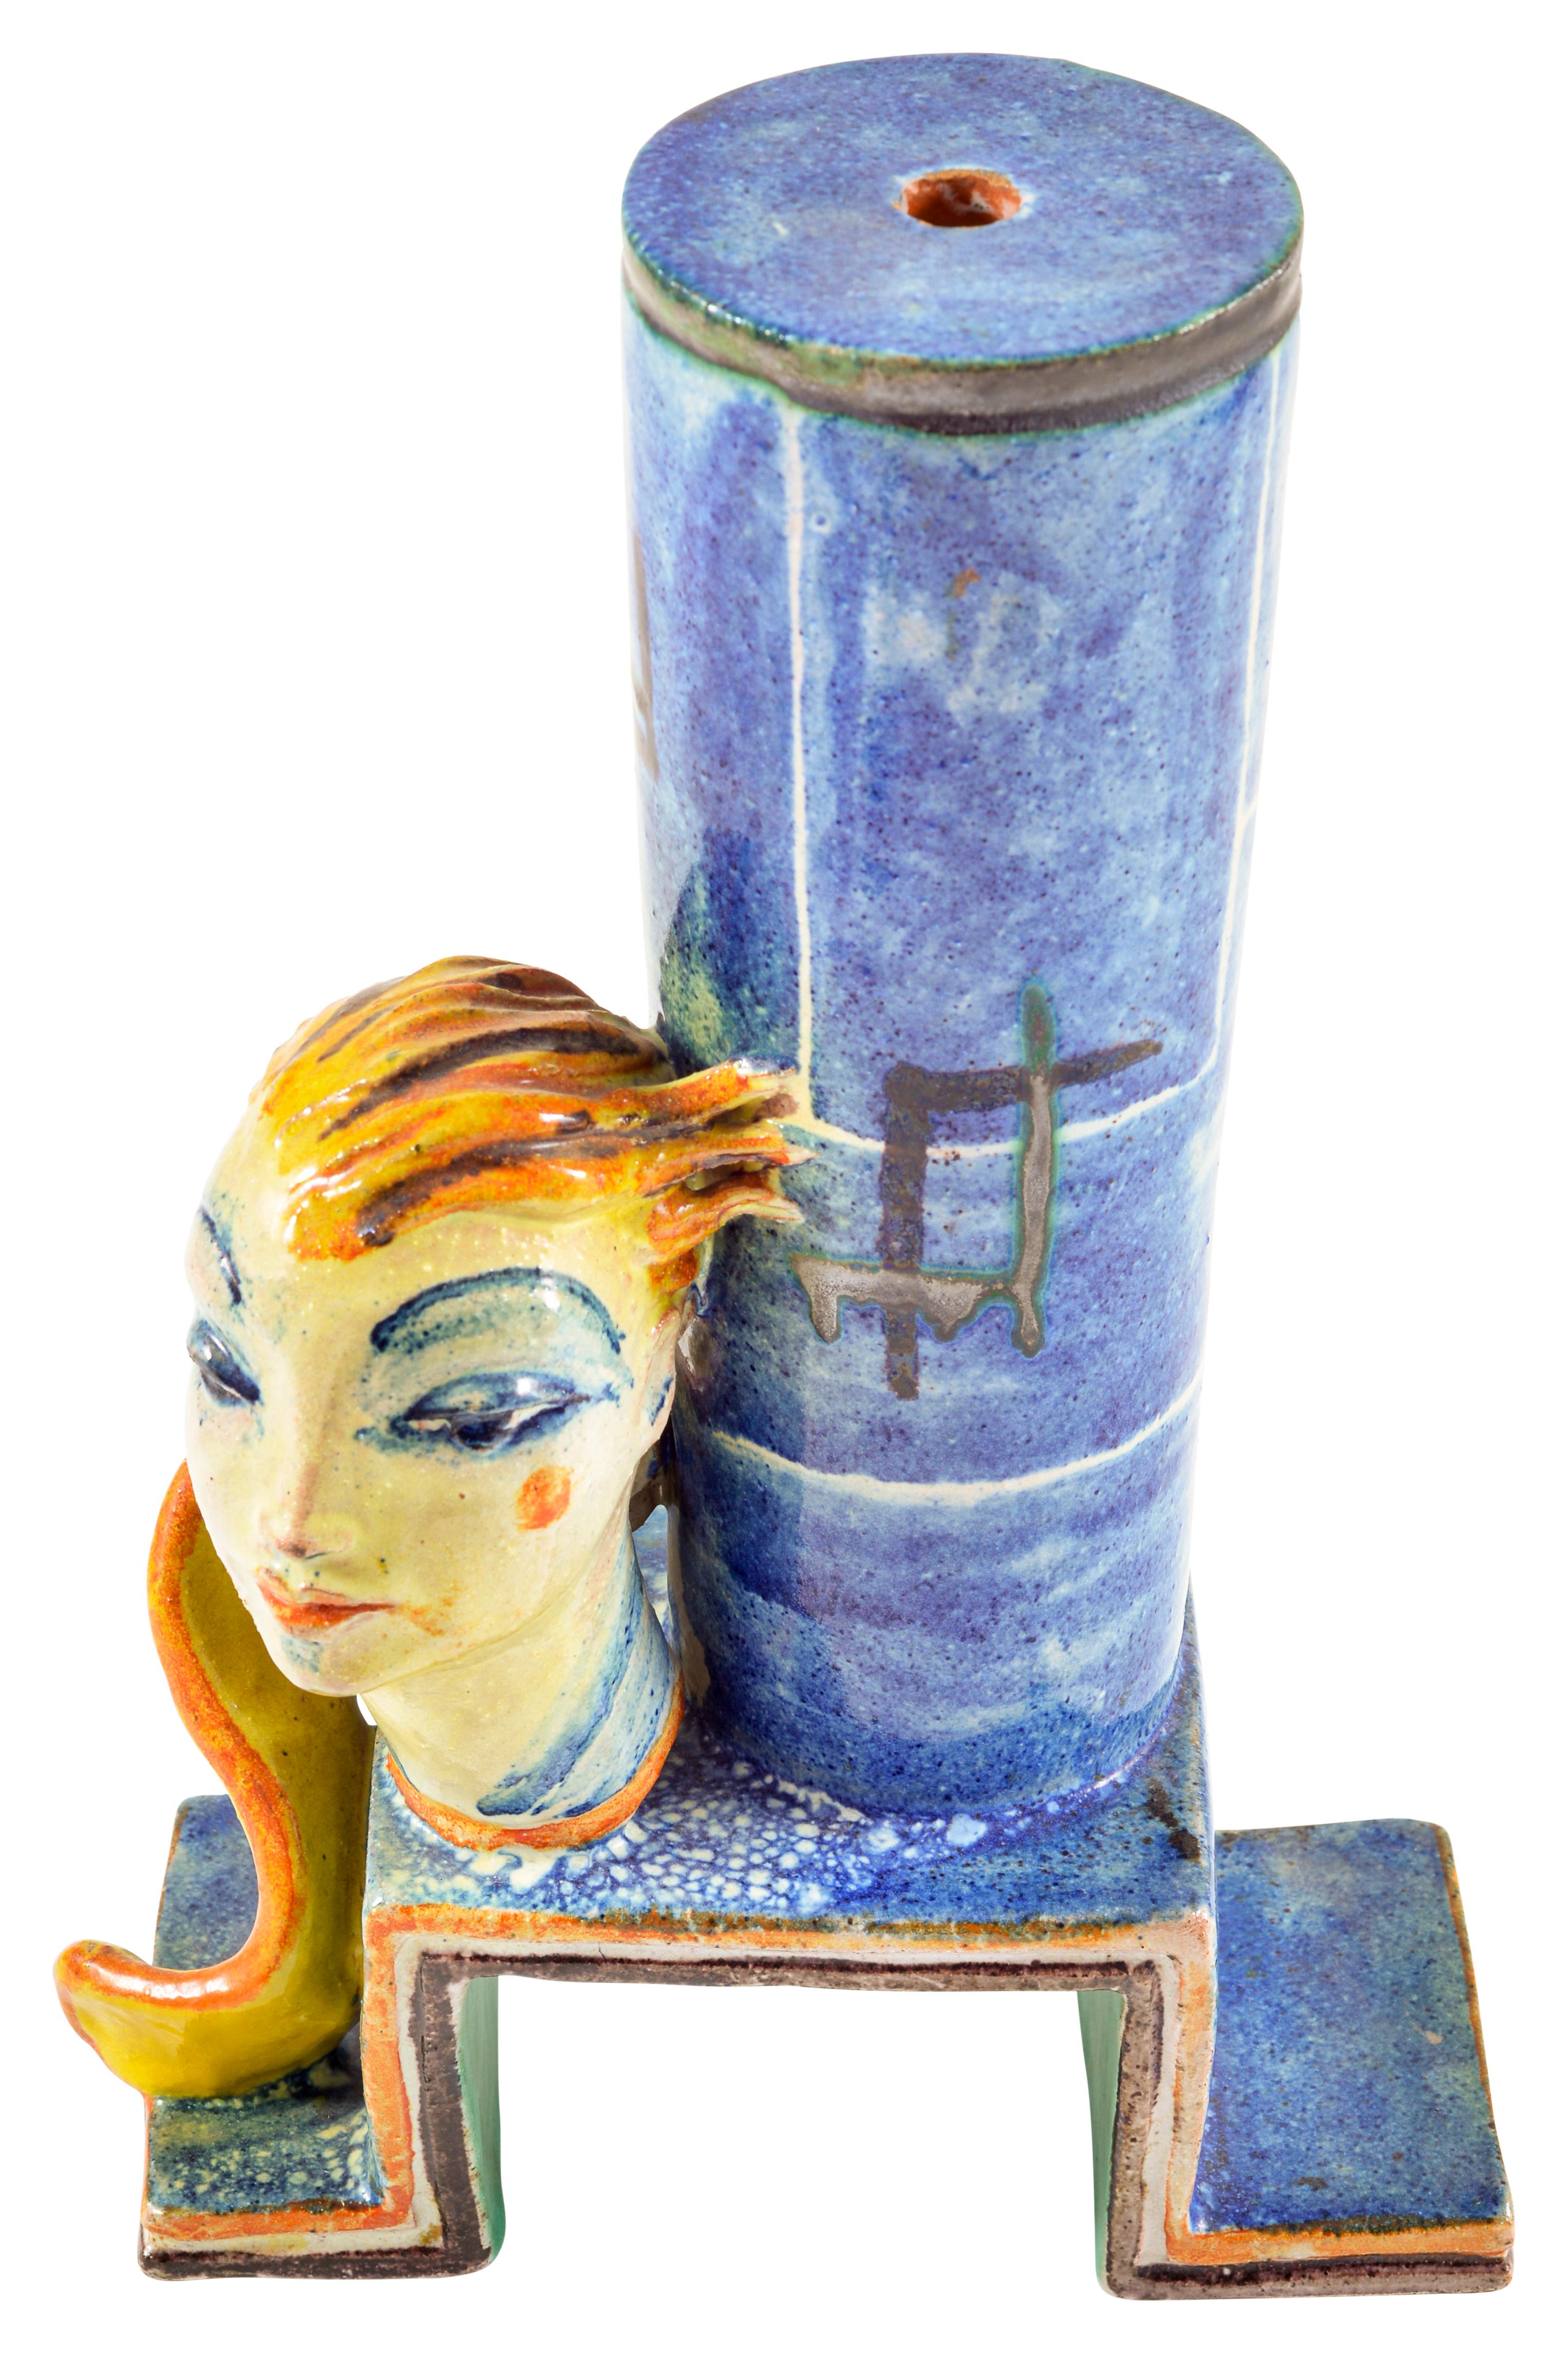 Pied de lampe en céramique avec une tête expressive conçu par Gudrun Baudisch exécuté par Wiener Werkstatte ca. 1928 marqué Austrian Art

Dans cet objet en céramique, Gudrun Baudisch associe ses représentations de têtes caractéristiques à un pied